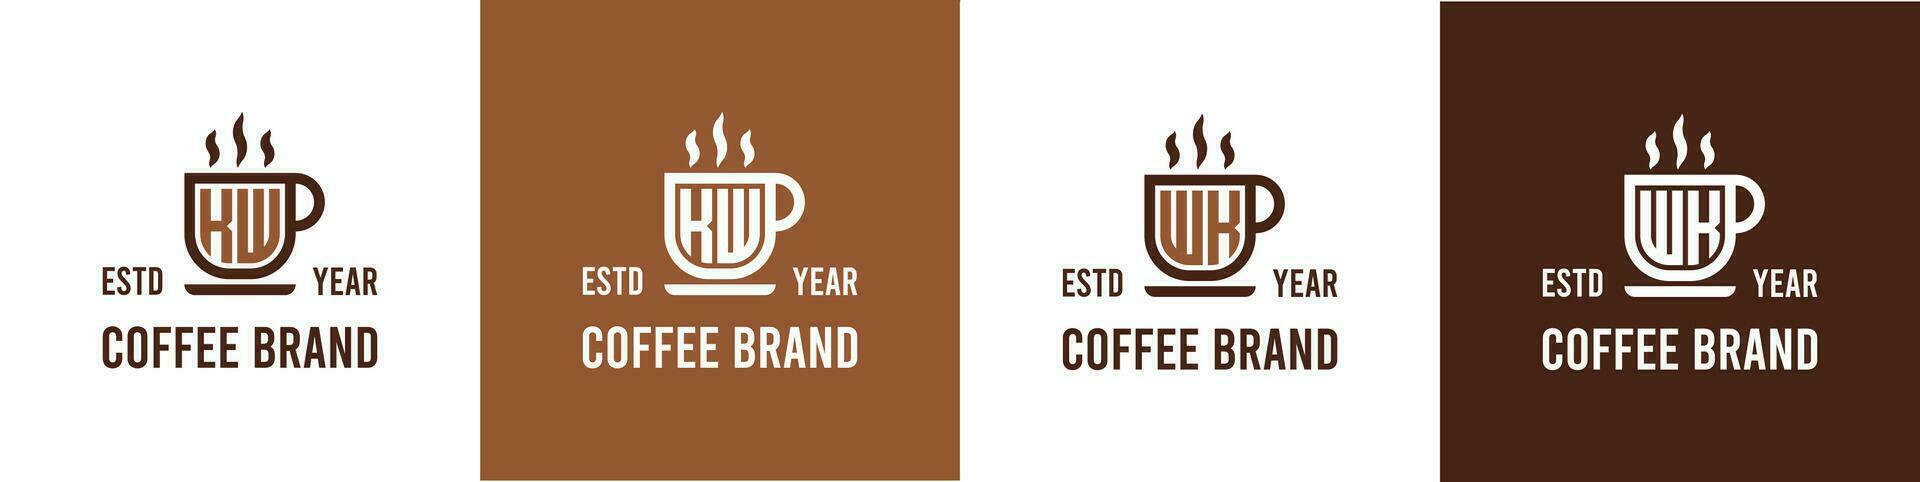 carta kw e sem. café logotipo, adequado para qualquer o negócio relacionado para café, chá, ou de outros com kw ou sem. iniciais. vetor